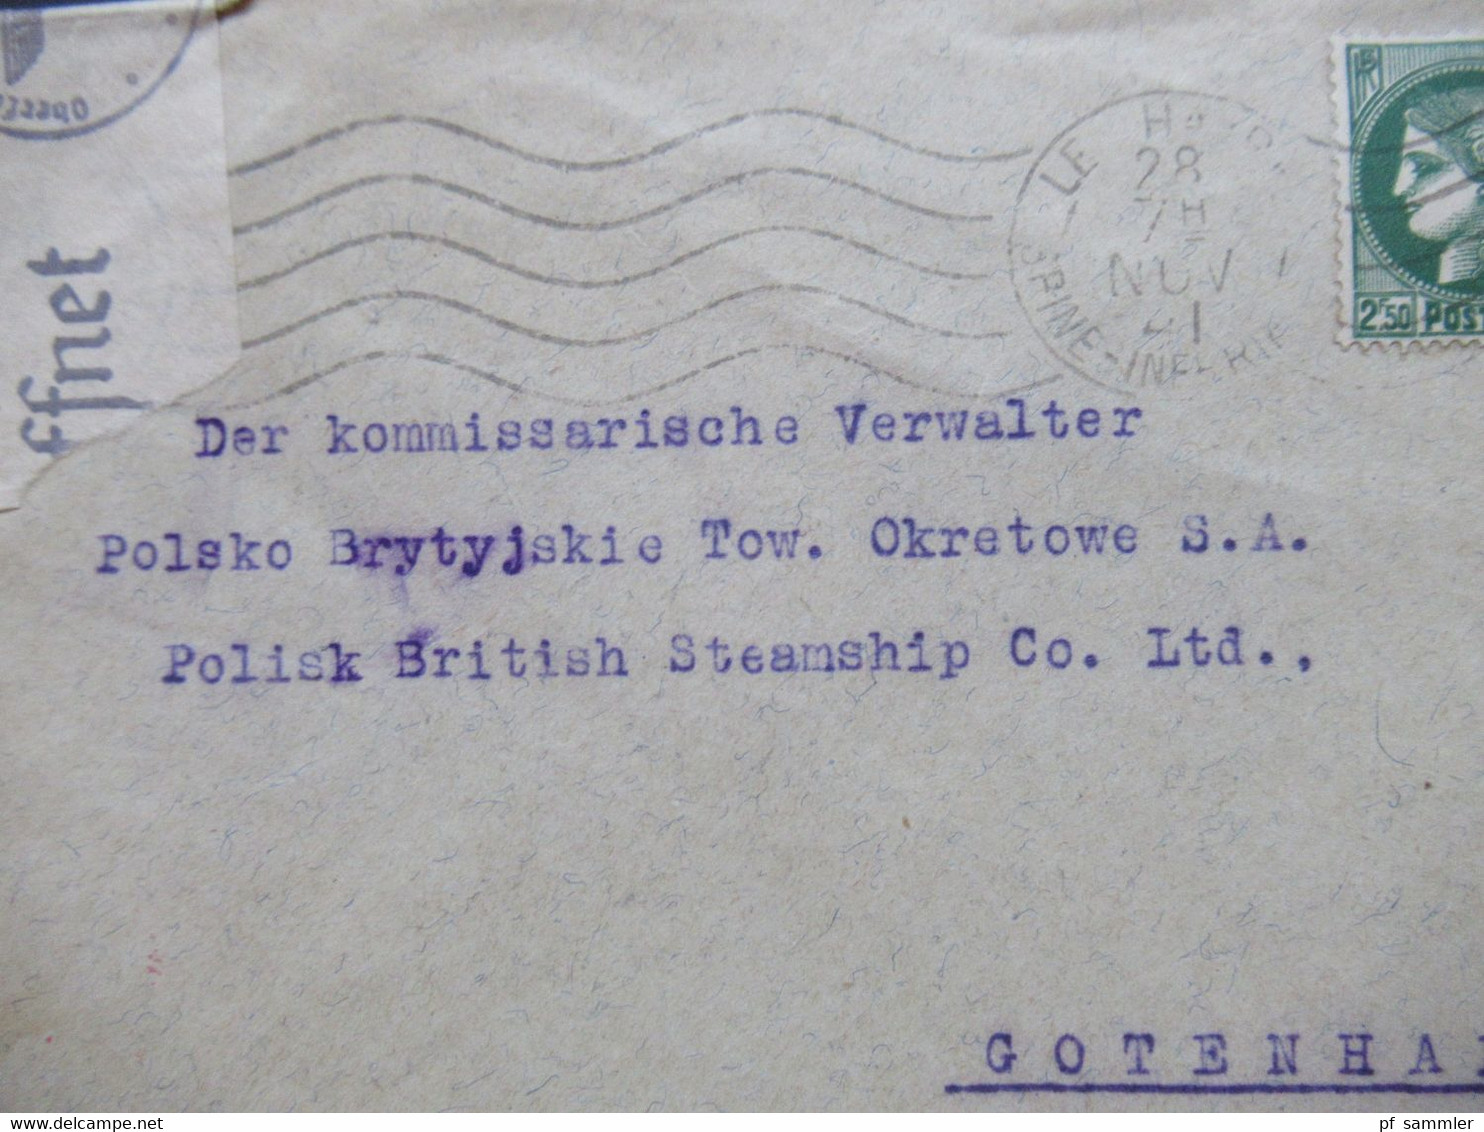 1941 OKW Zensur Langstaff, Erembert Havre An Den Komissarischen Verwalter Polisk British Steamship Gotenhafen / Gdynia - Covers & Documents